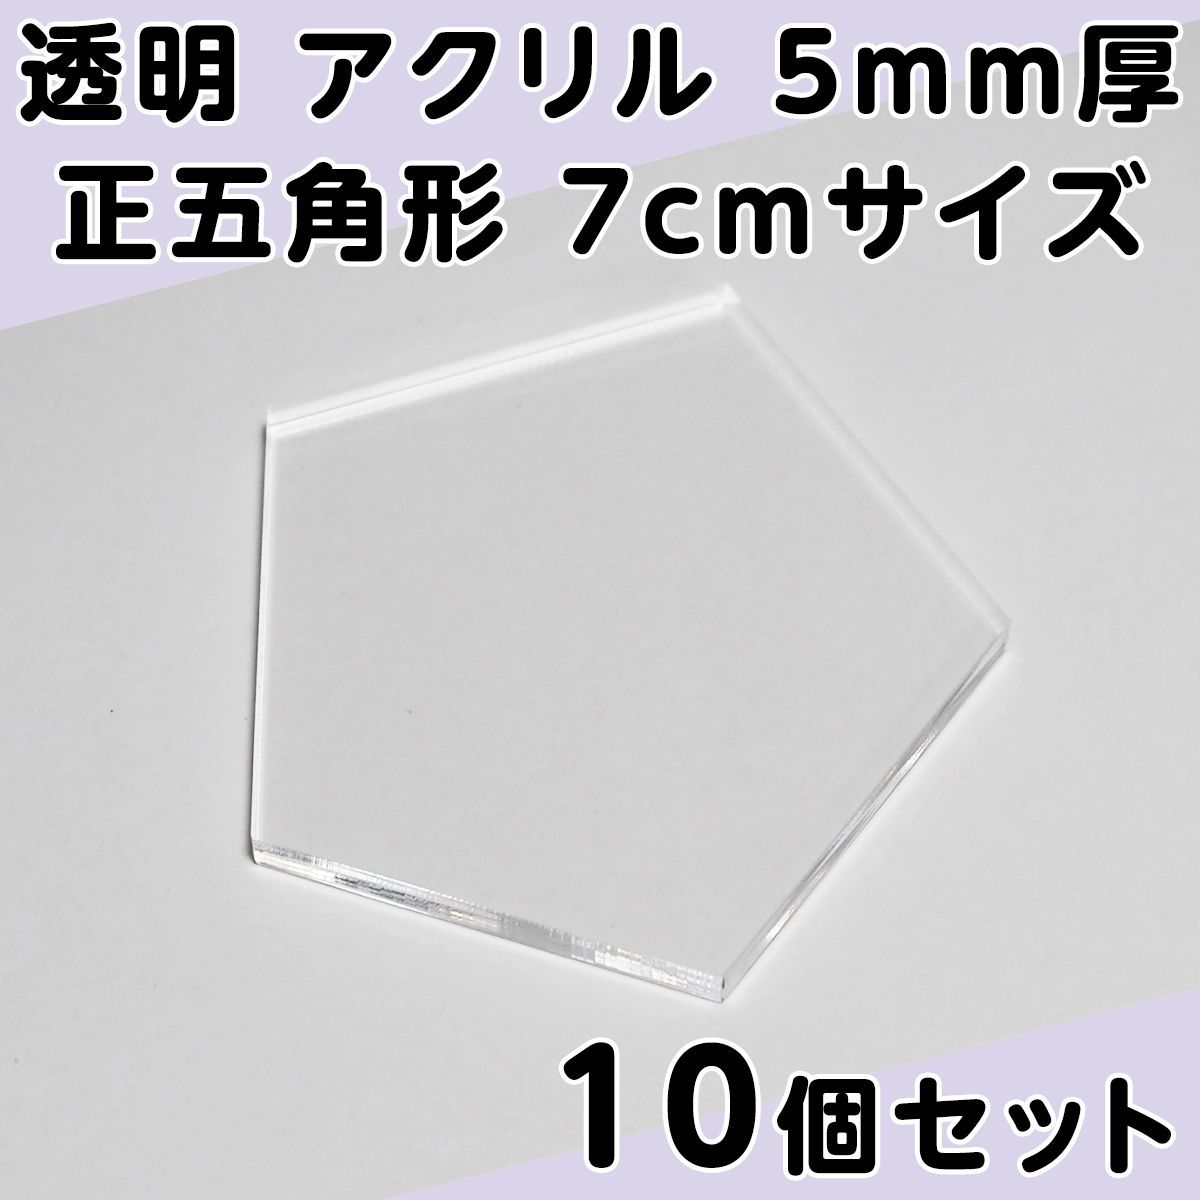 透明 アクリル 5mm厚 正五角形 7cmサイズ 10個セット - メルカリ